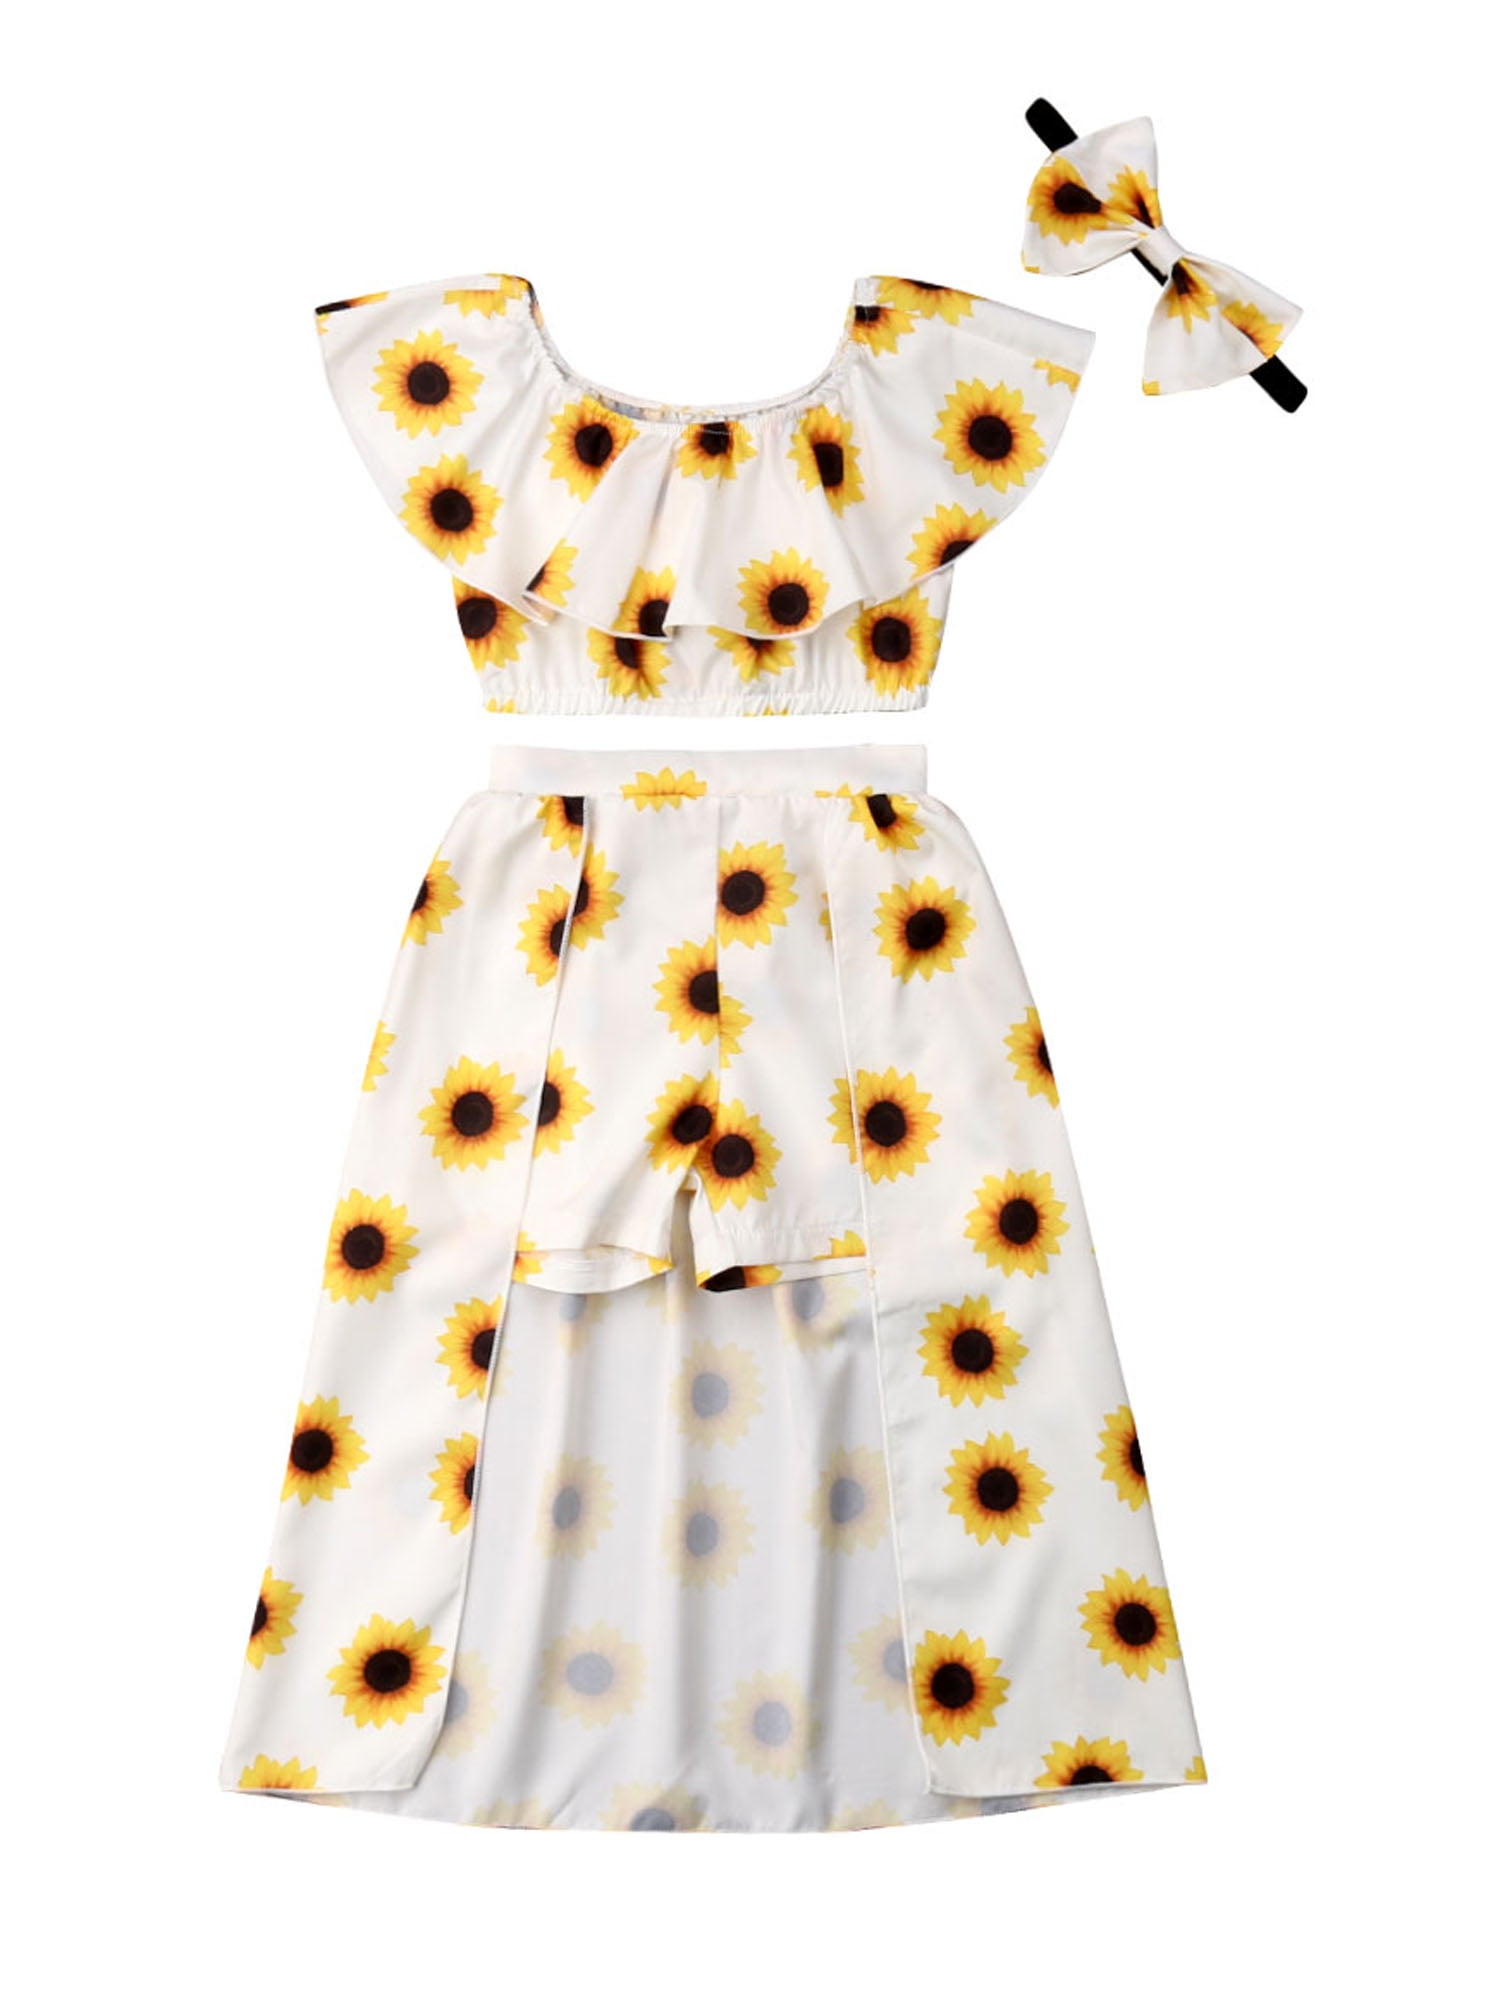 Cute Sunflower Summer Girls Crop Tops Shorts Dress Headband Outfits Clothes Set 